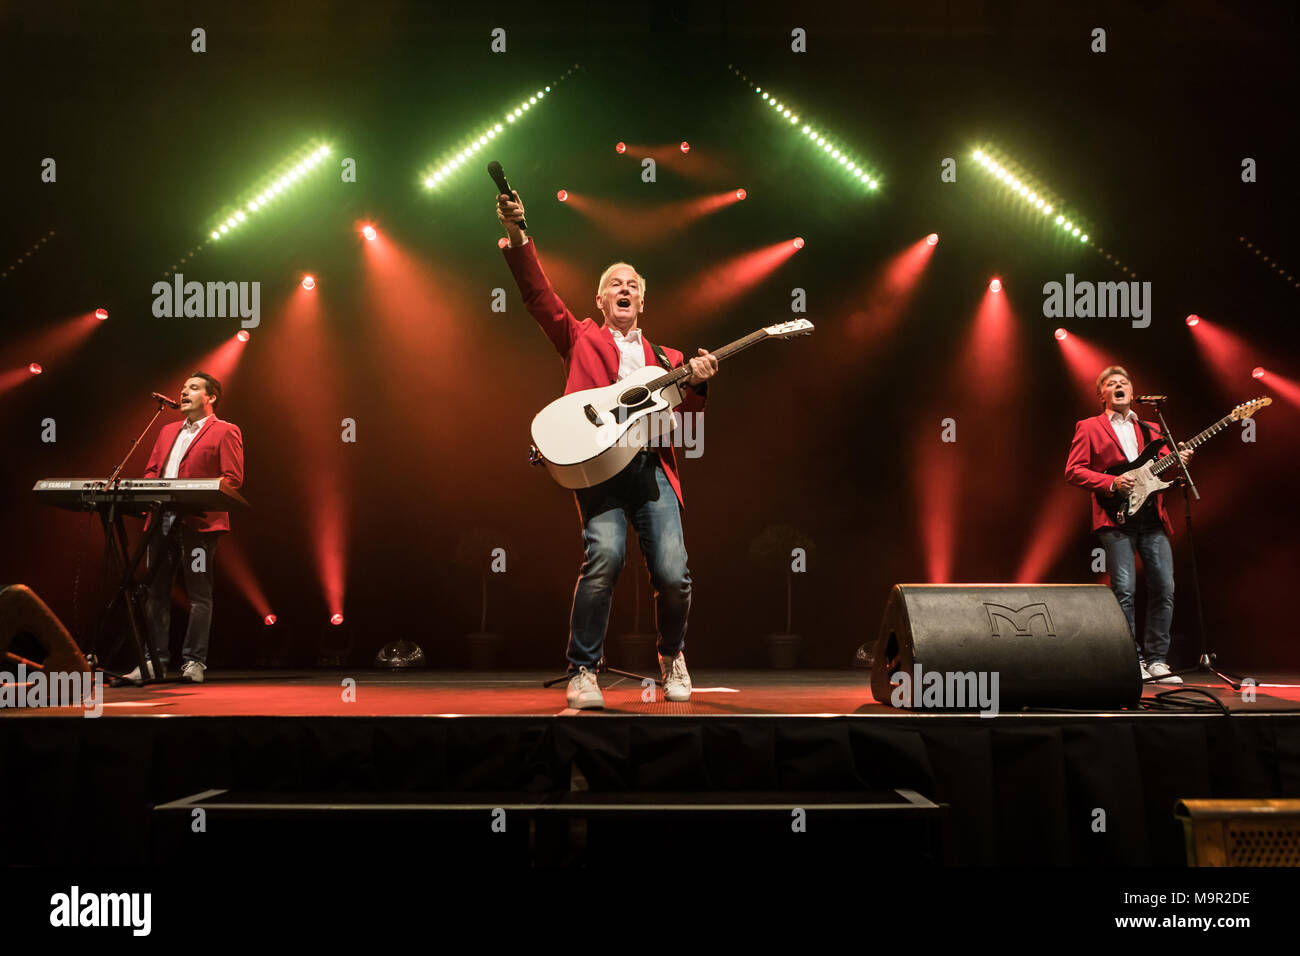 Die Schweizer pop band Calimeros live auf Schlager Nacht in Luzern, Schweiz  Roland Eberhart, Gesang und Gitarre Andy Steiner Stockfotografie - Alamy